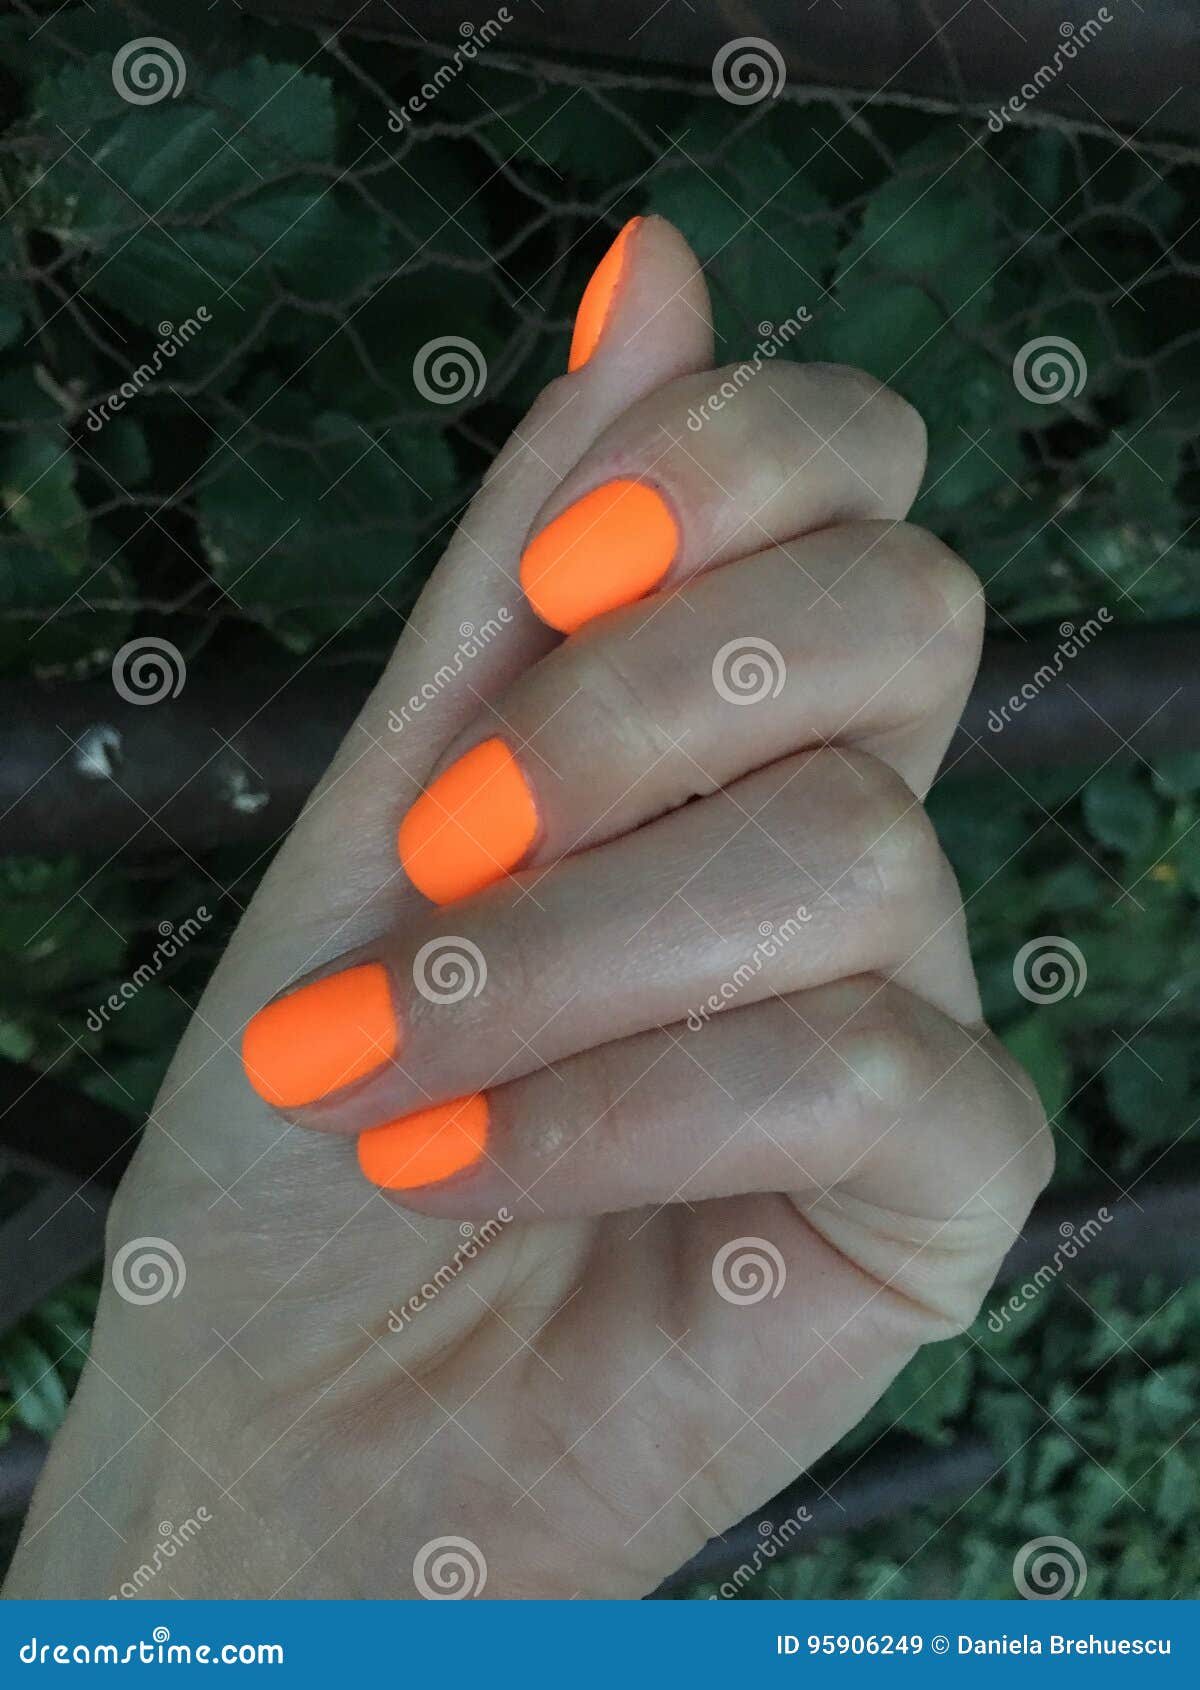 Оранжевые Ногти Фото